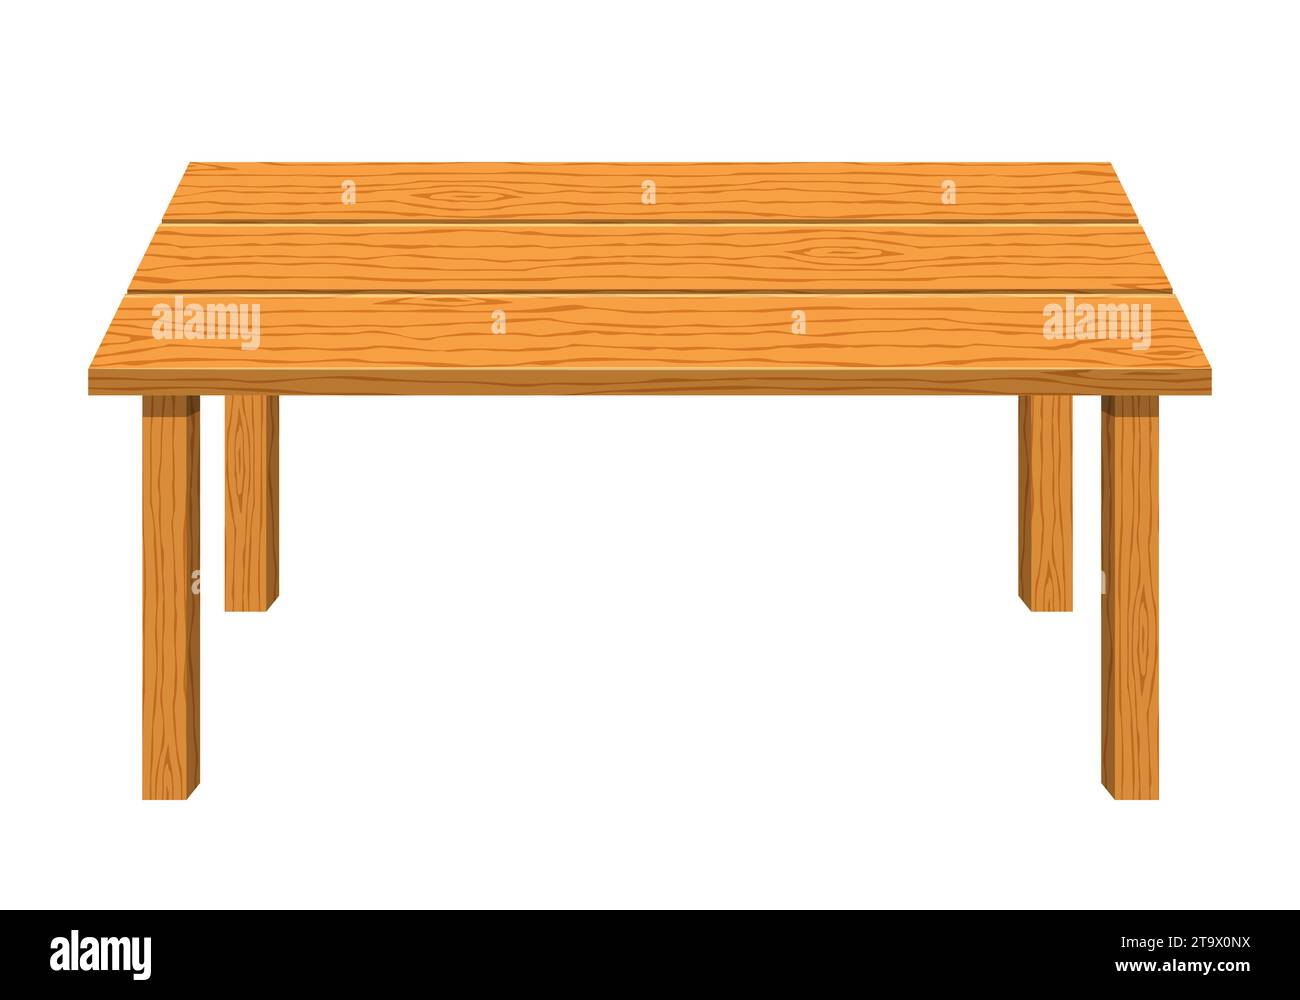 Tavolo vuoto di forma rettangolare in legno isolato su sfondo bianco. Icona del tavolo da pranzo marrone. Mobili per la casa. Illustrazione vettoriale. Illustrazione Vettoriale